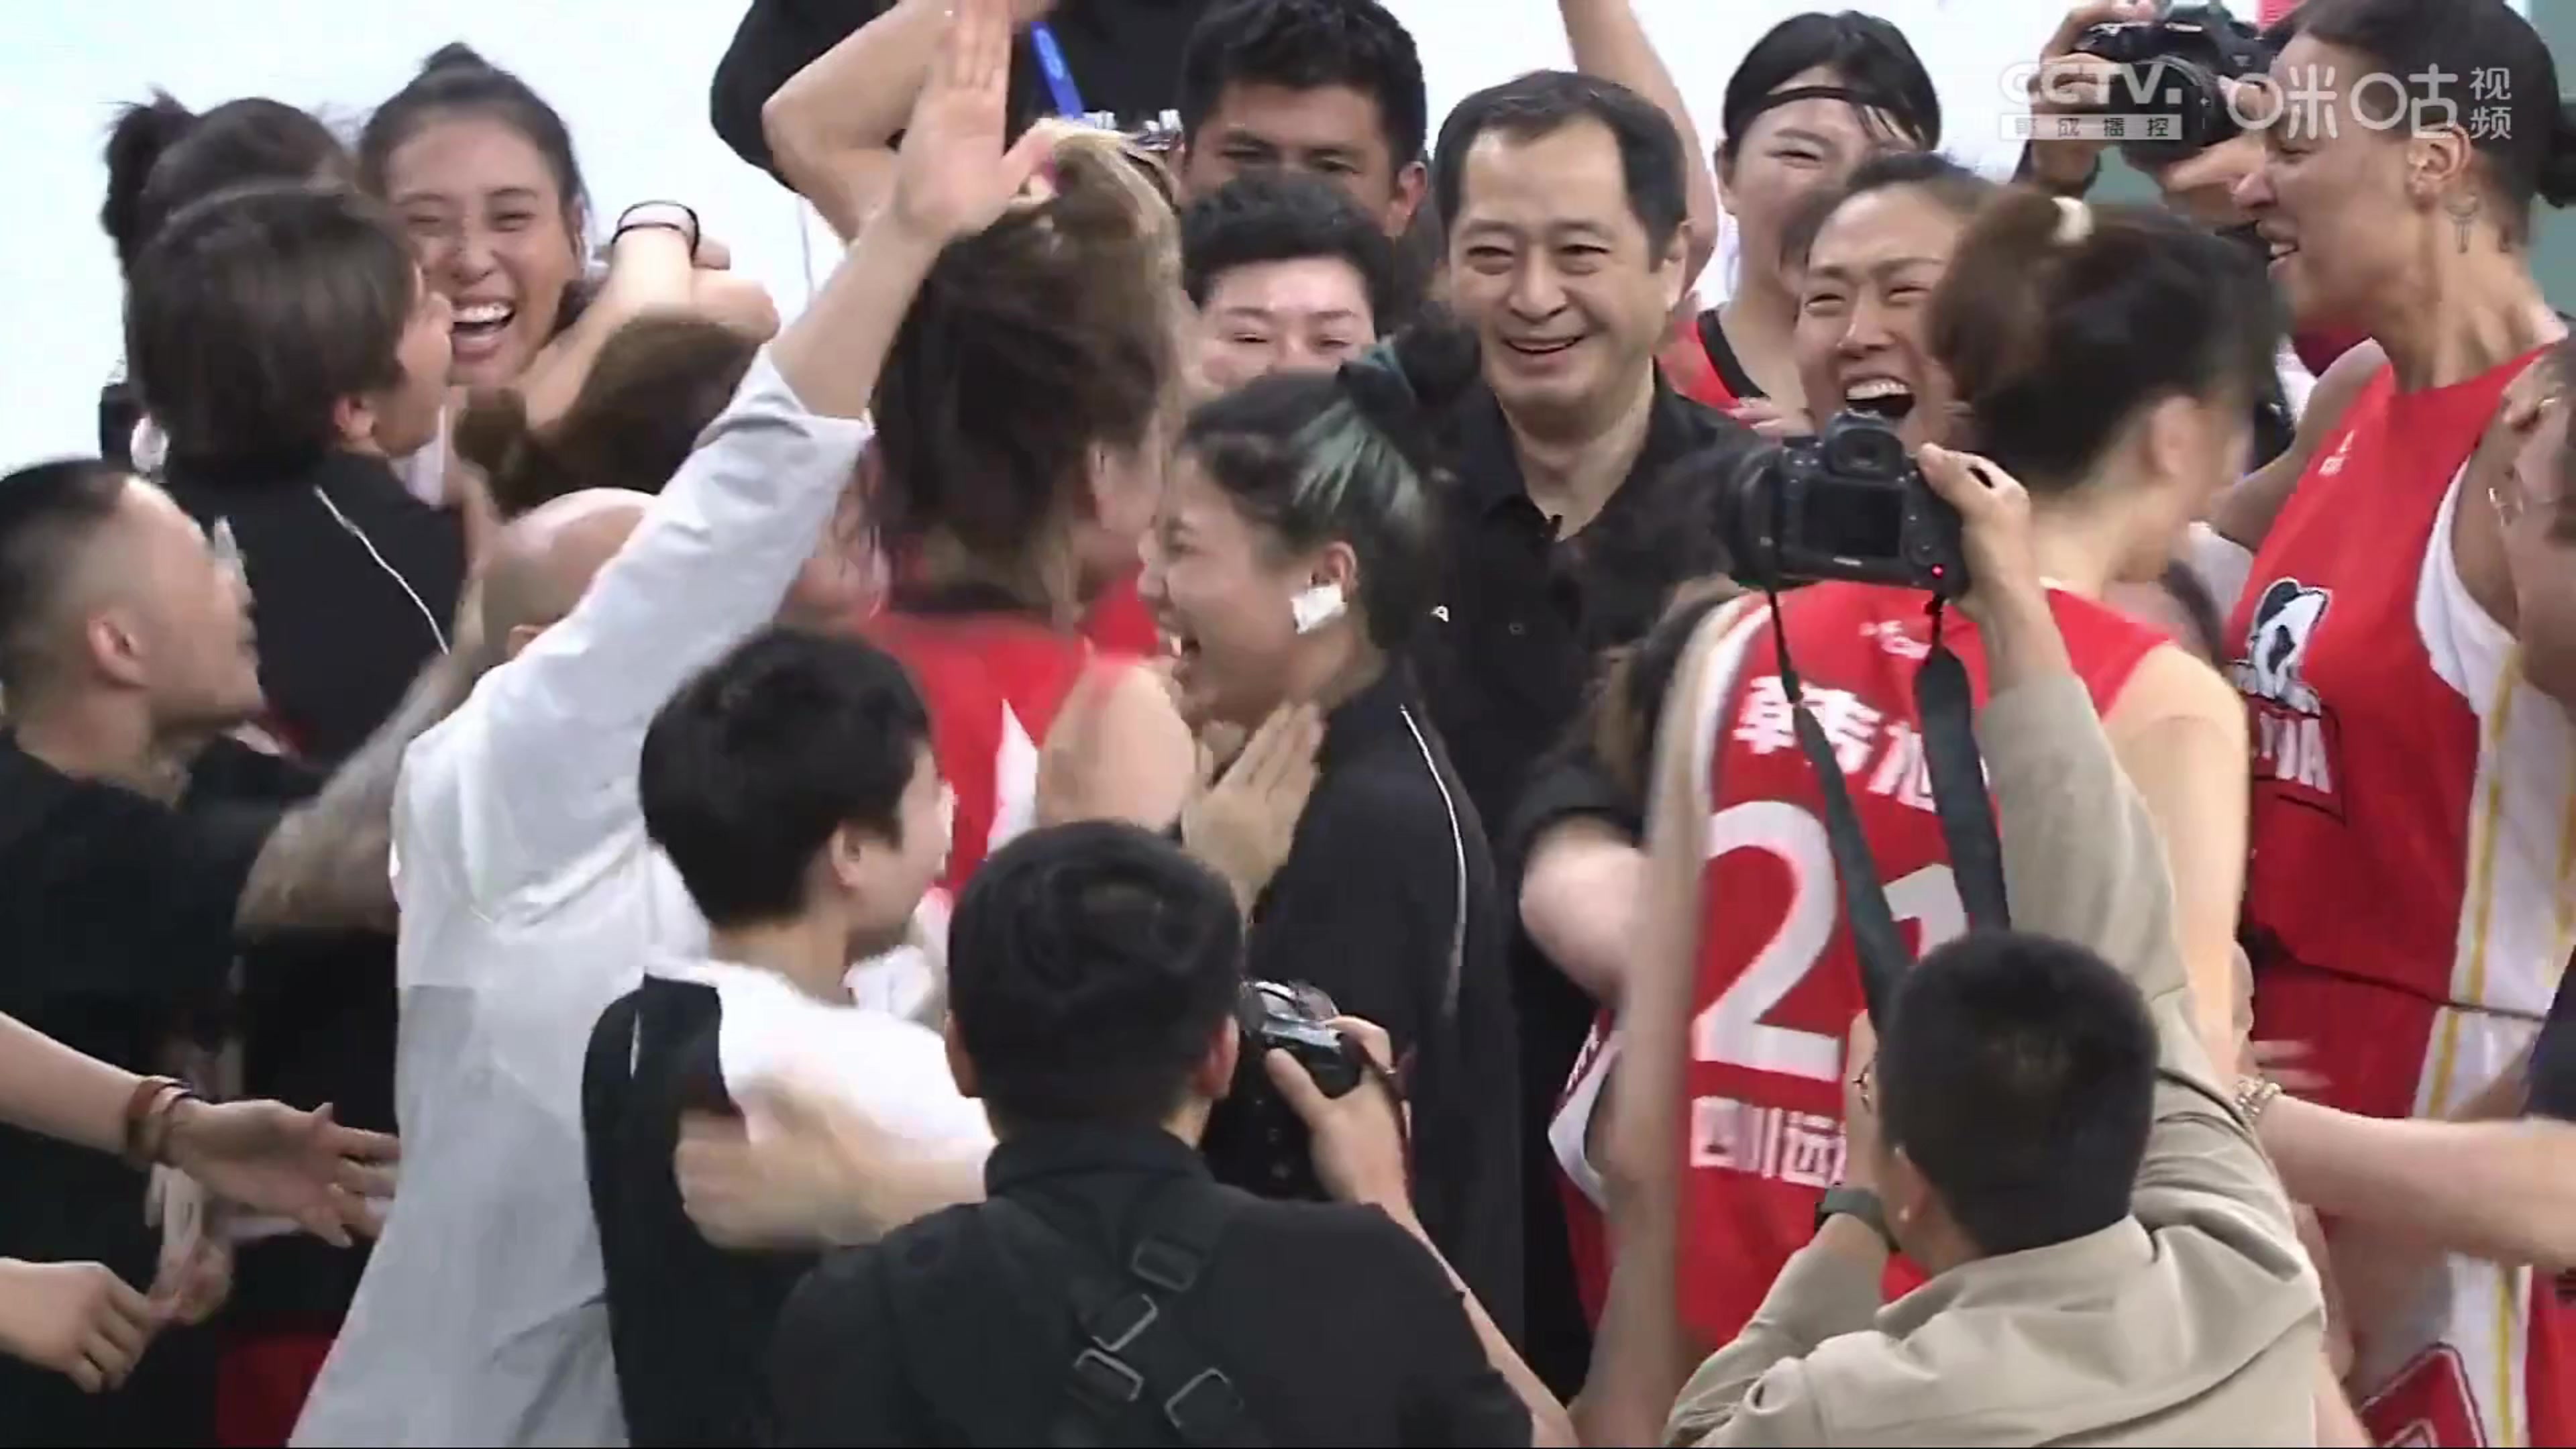 昨晚四川女篮夺冠，一位嘉宾庆祝时过于兴奋拍打韩旭力气过大，让韩旭有些生气！